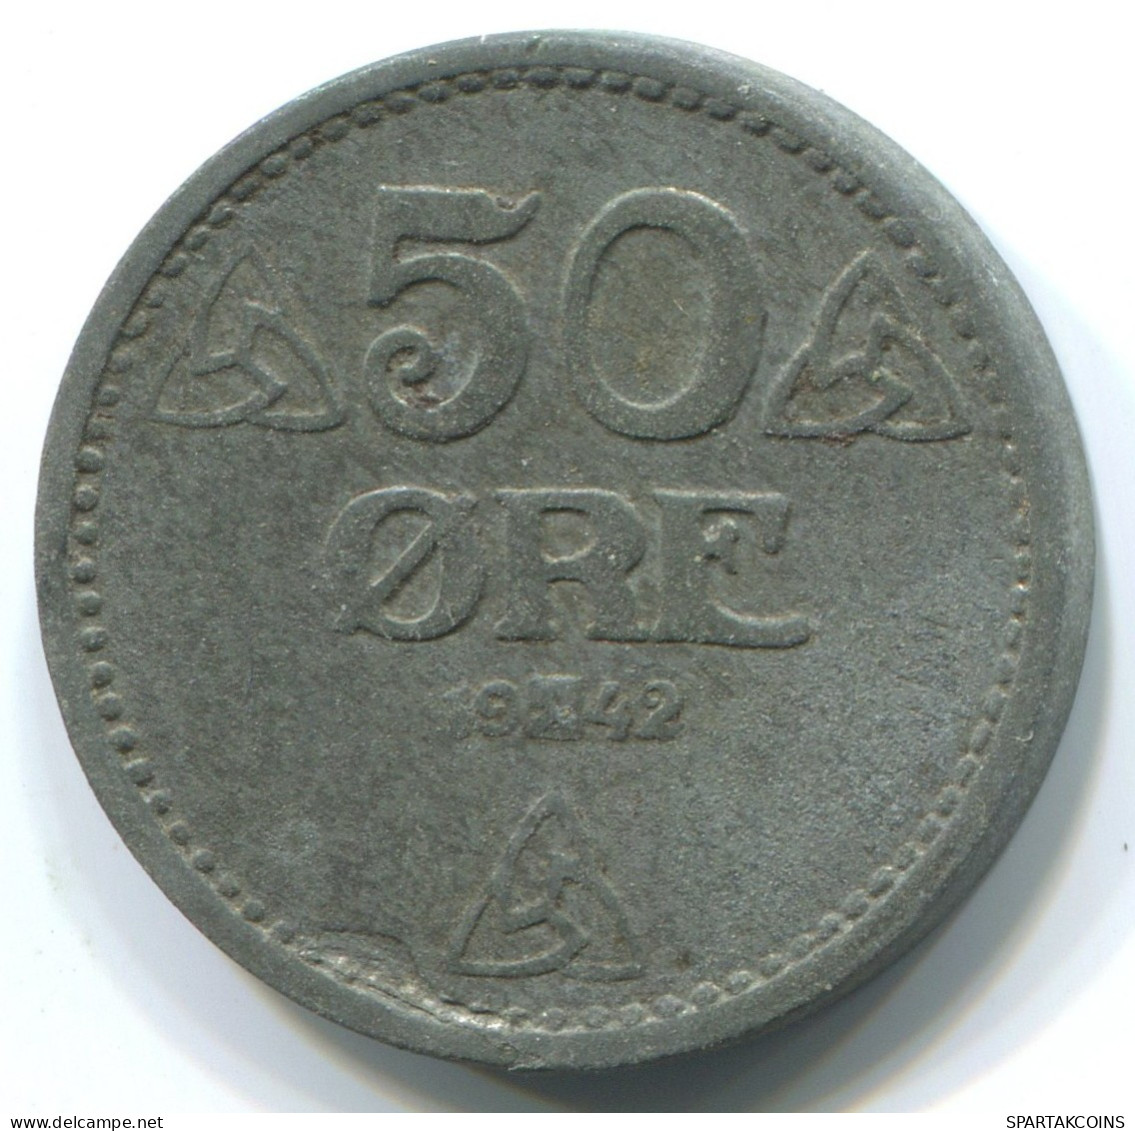 50 ORE 1942NORUEGA NORWAY Moneda #WW1037.E.A - Noruega